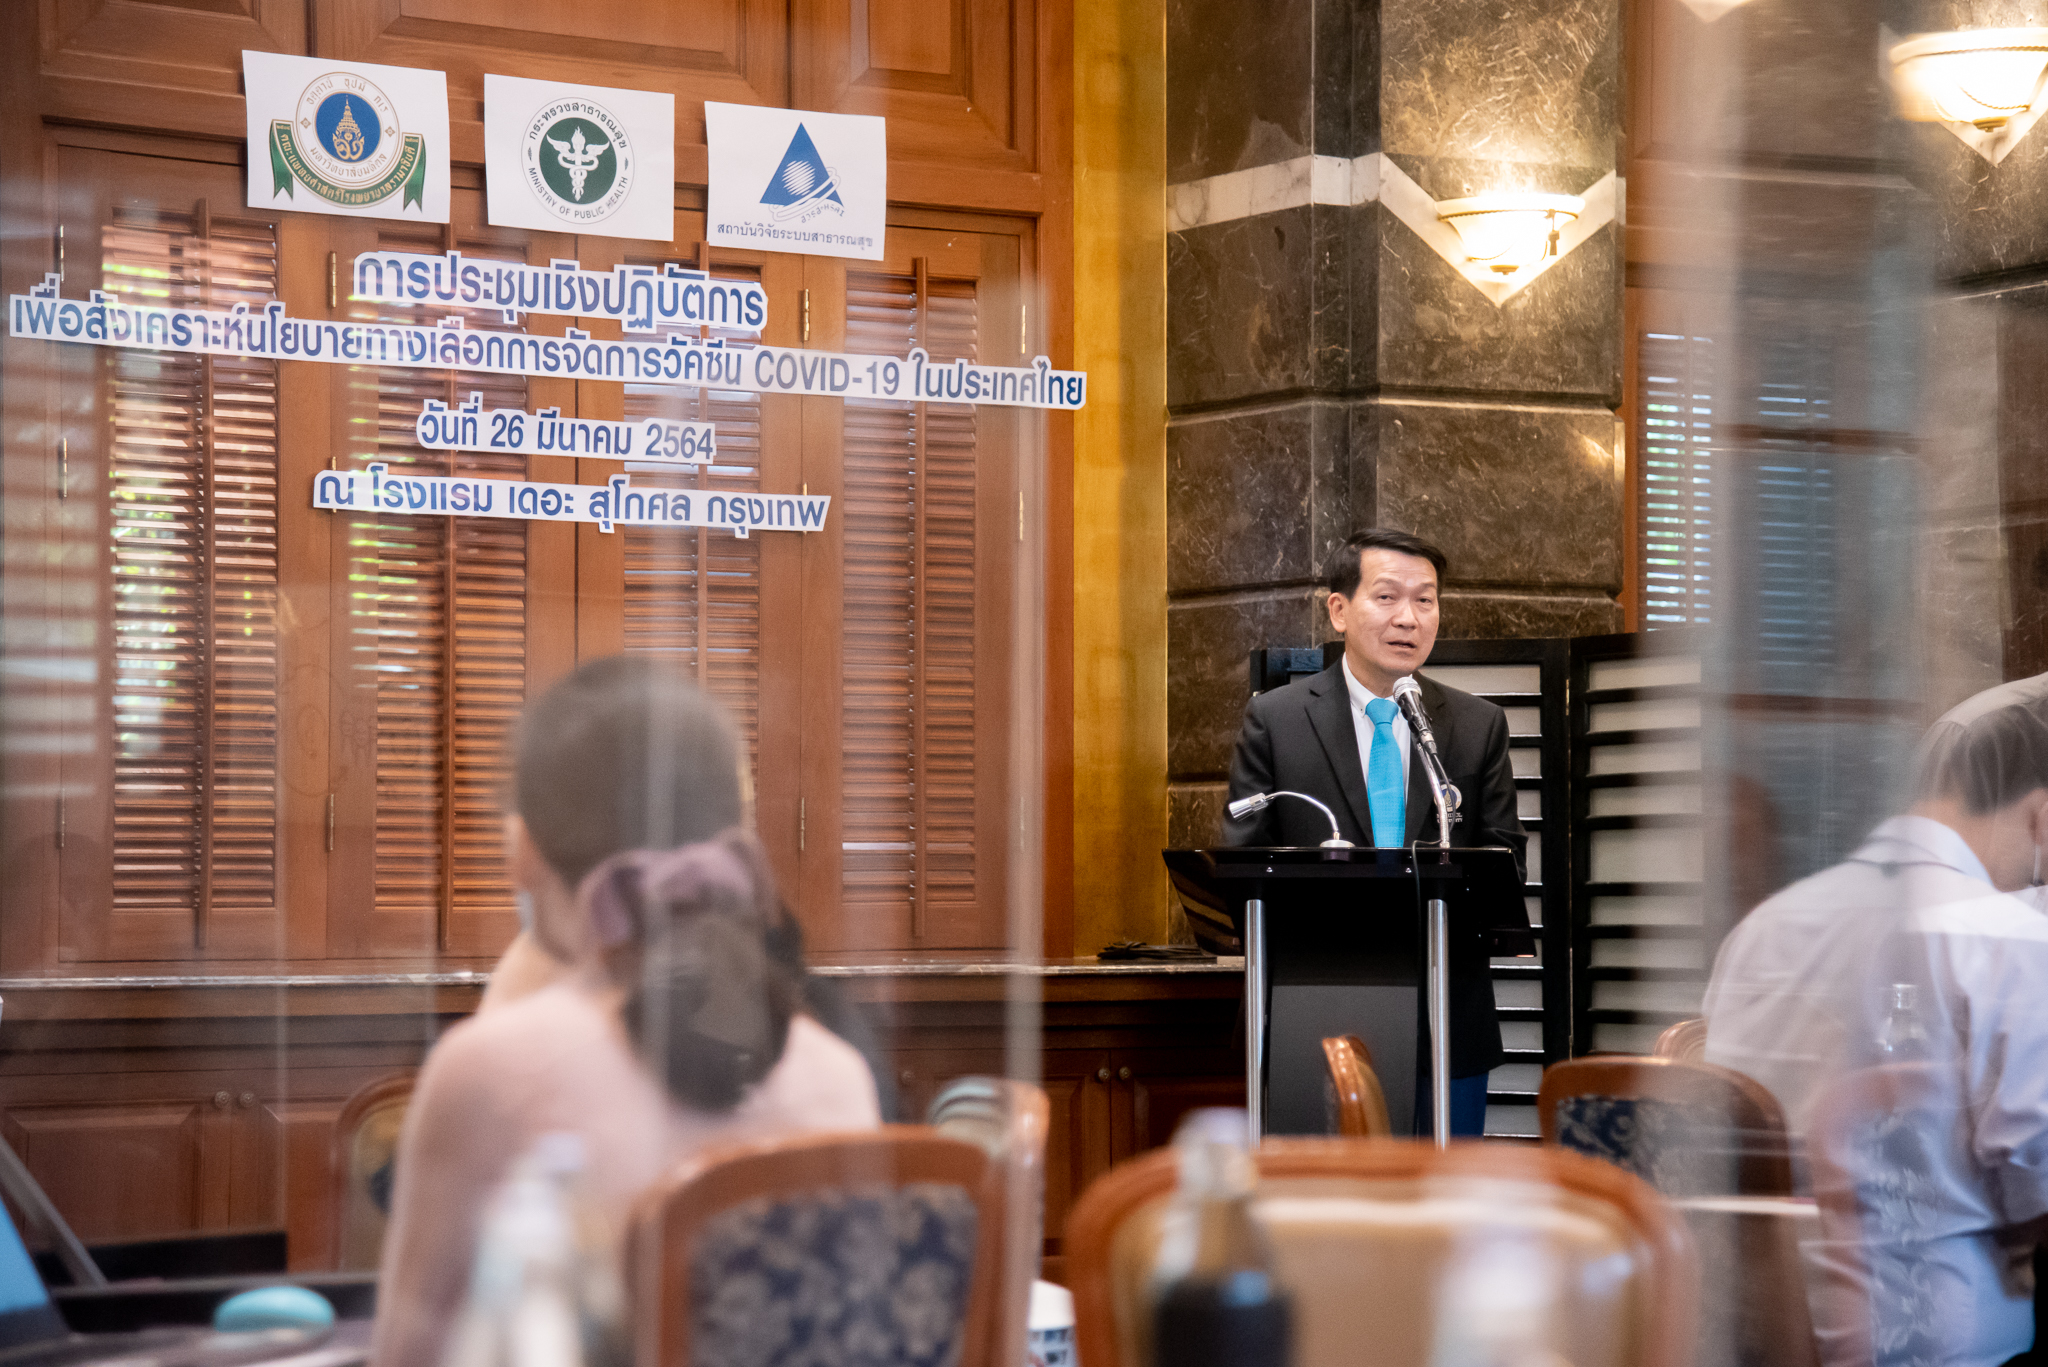 การประชุมเชิงปฏิบัติการเพื่อสังเคราะห์นโยบายทางเลือกการจัดการวัคซีน COVID-19 ในประเทศไทย